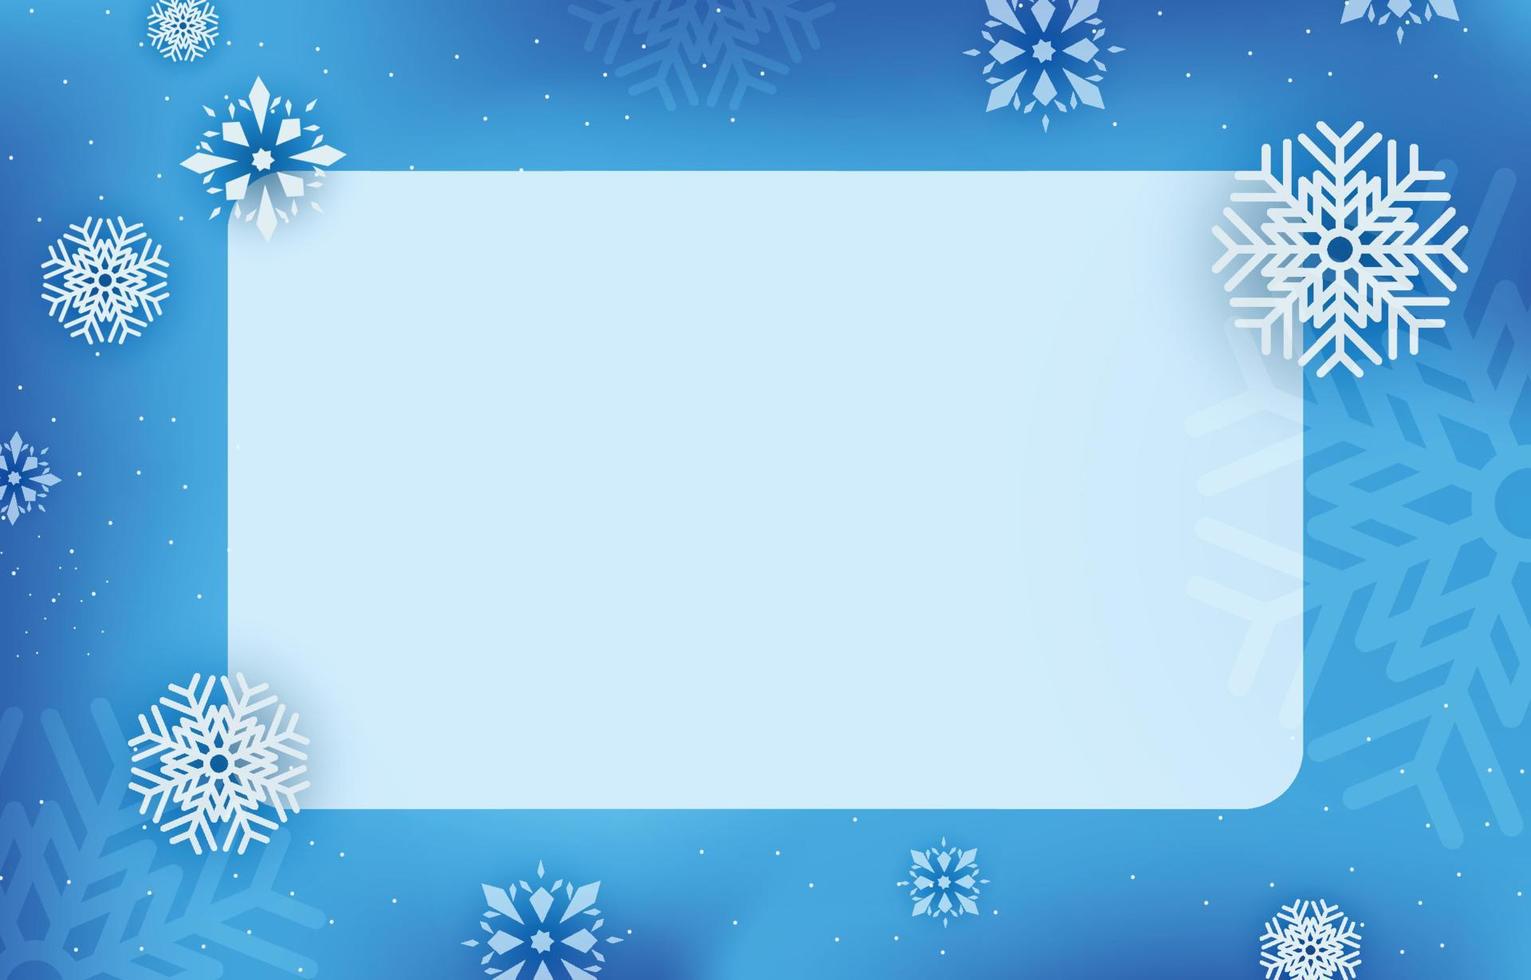 rótulo quadrado em branco azul claro decorado com flocos de neve, ilustração vetorial de inverno, natal e ano novo. vetor